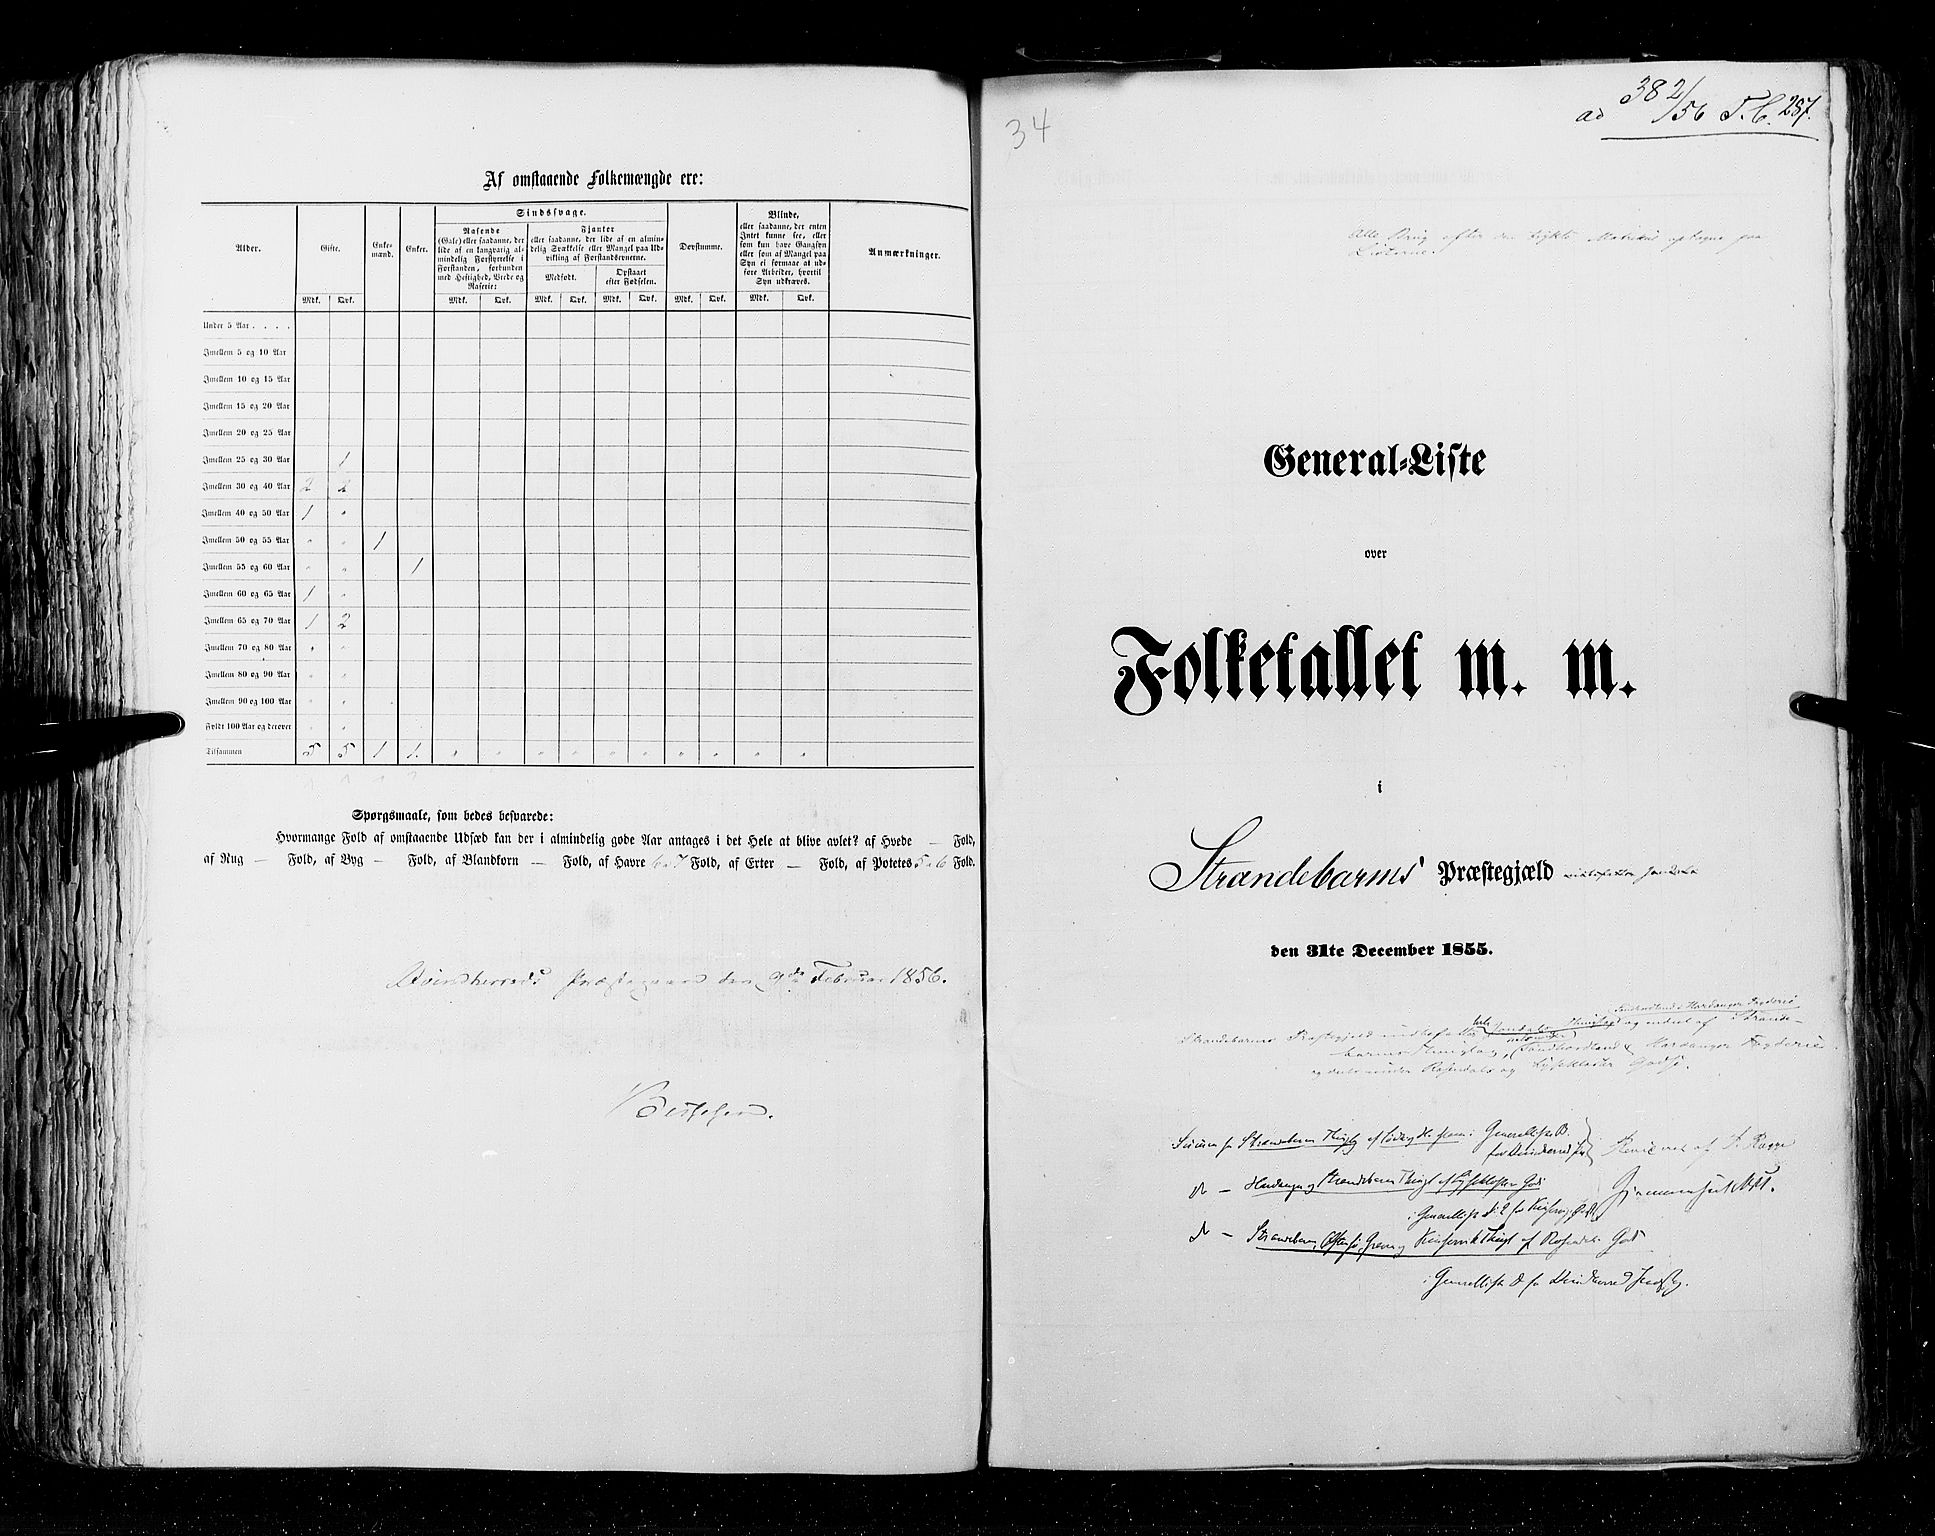 RA, Folketellingen 1855, bind 4: Stavanger amt og Søndre Bergenhus amt, 1855, s. 287